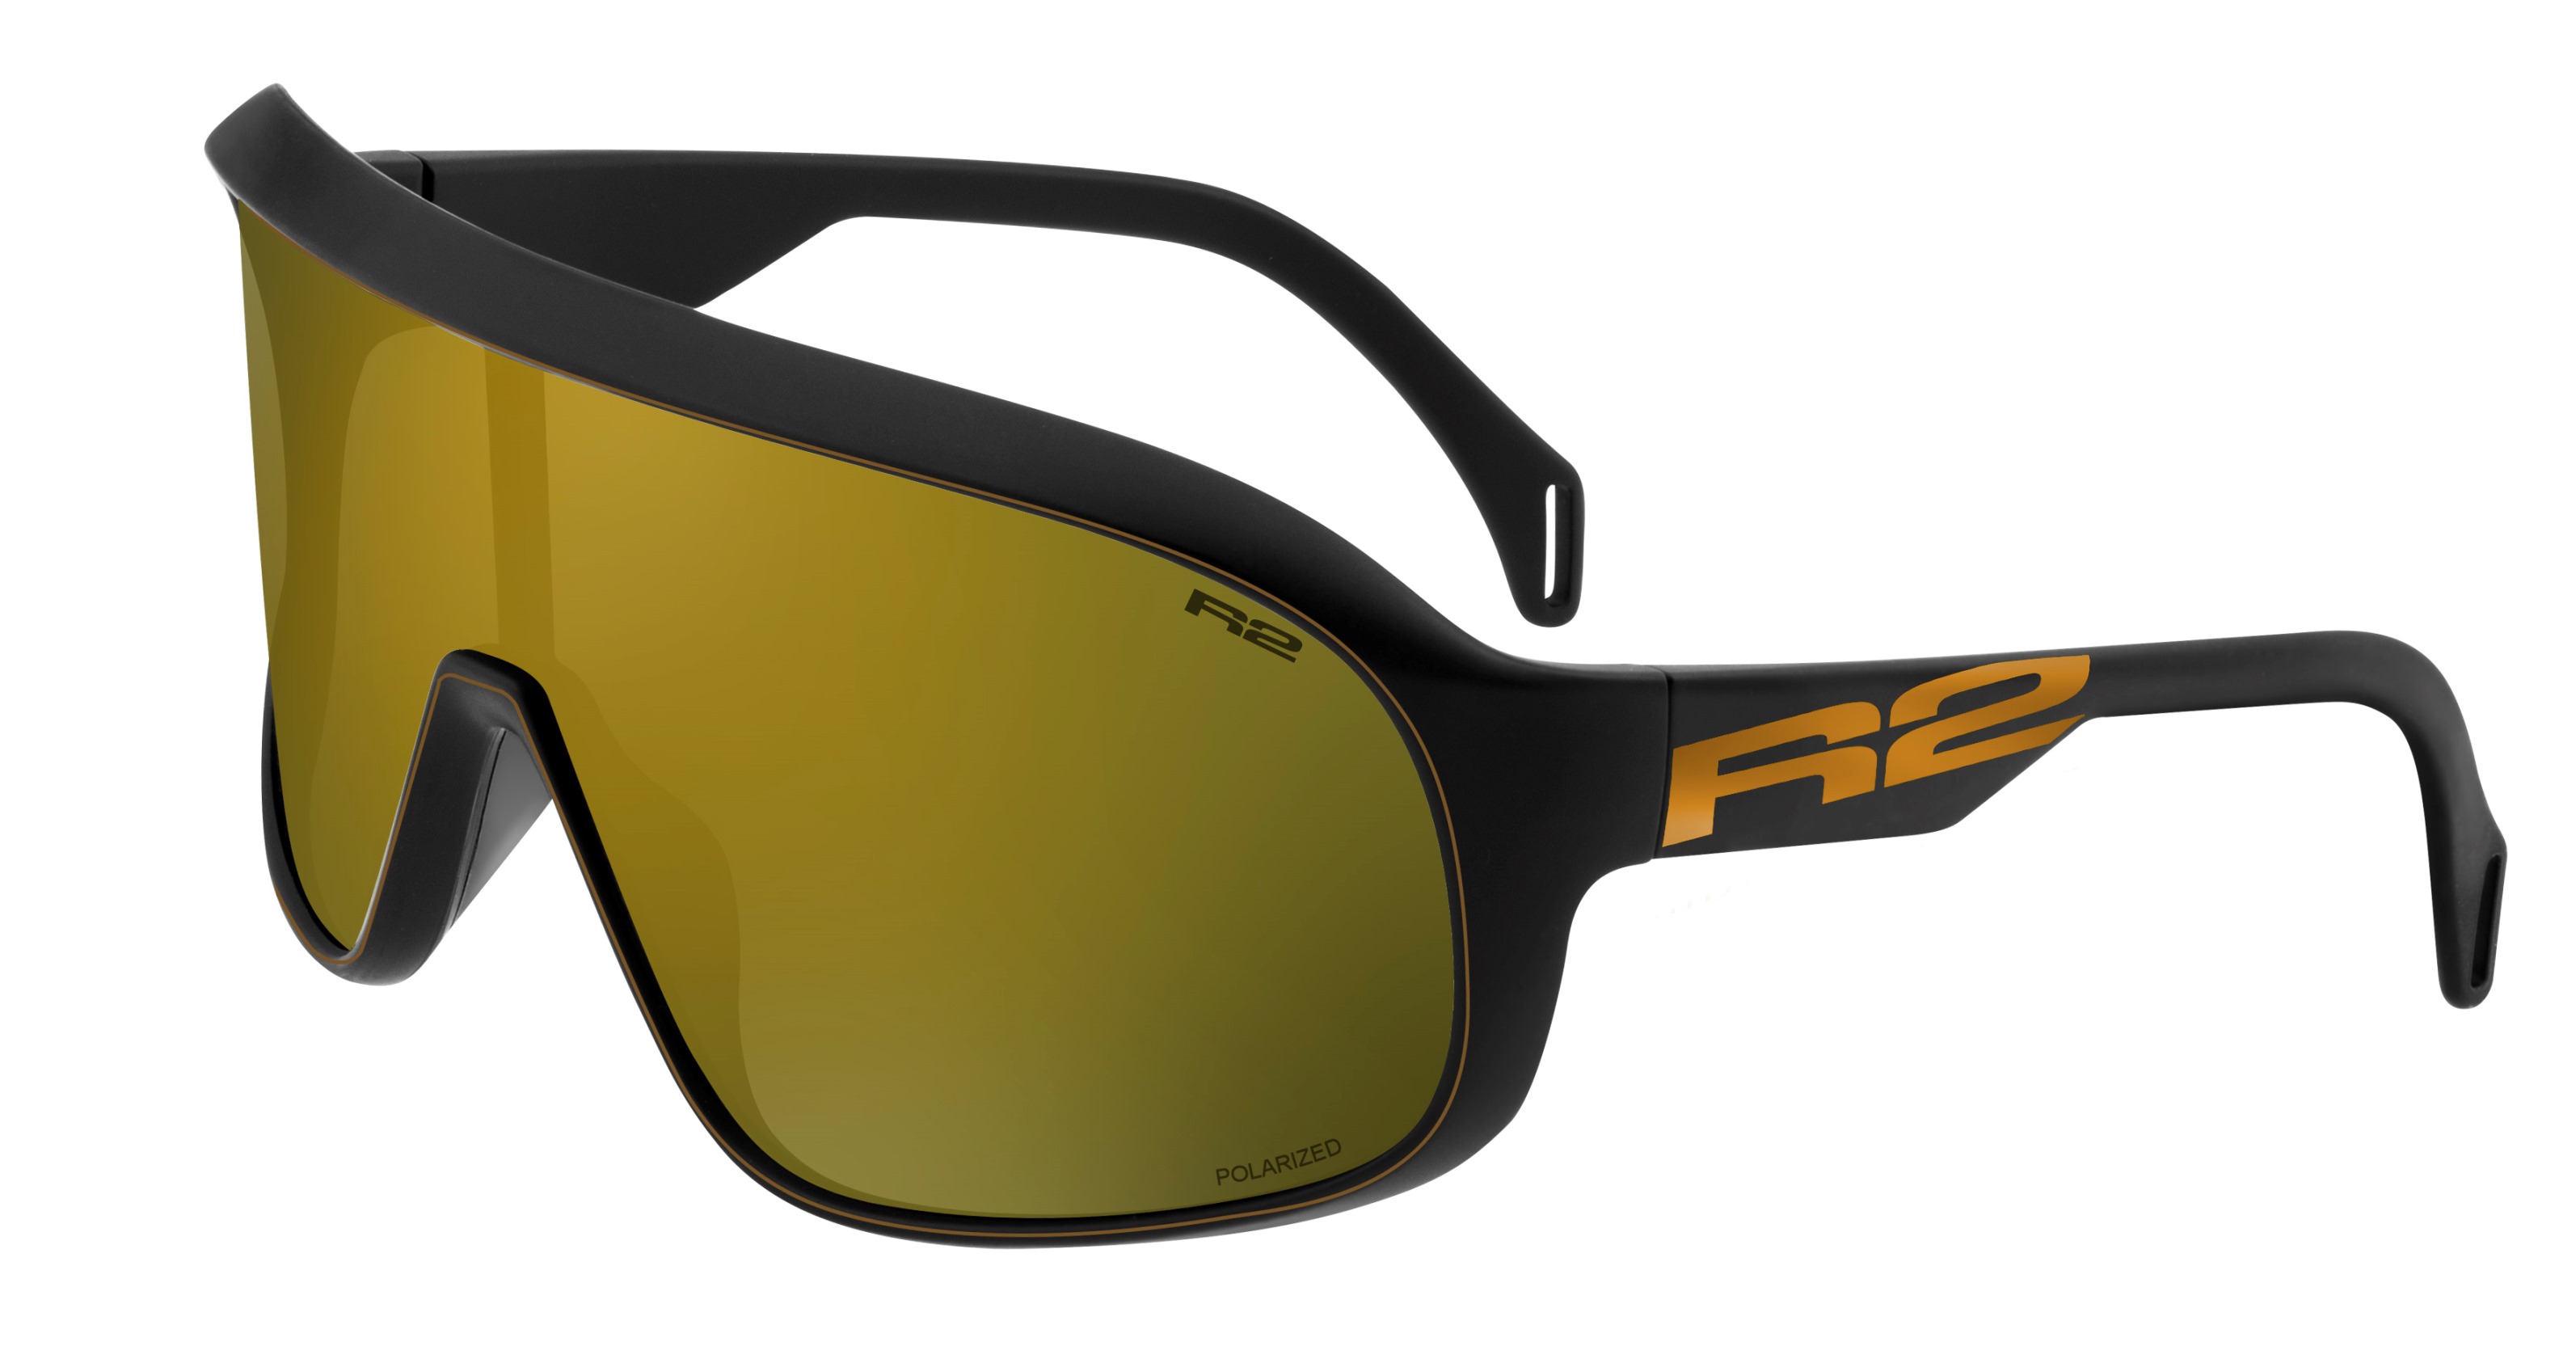 Sport sunglasses R2 FALCON AT105D